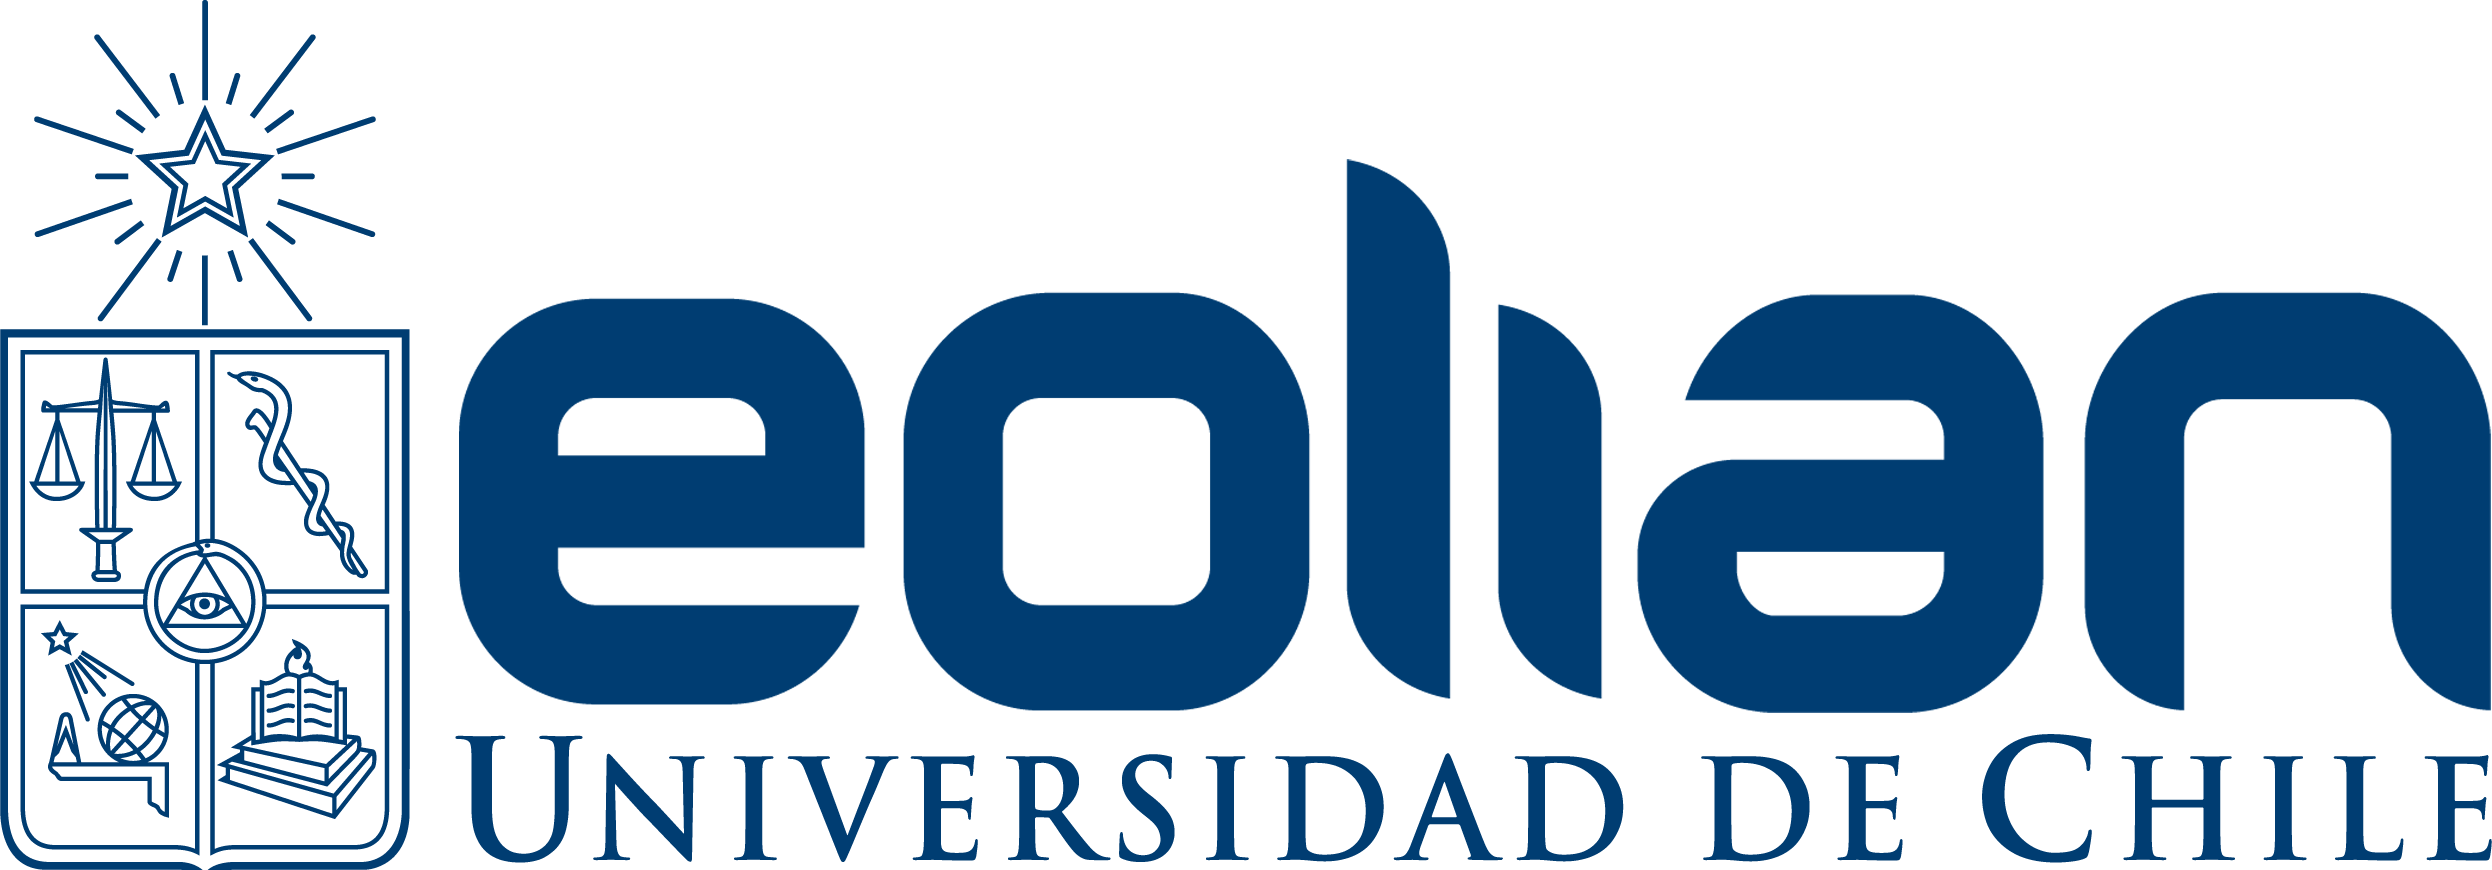 Logo Eolian